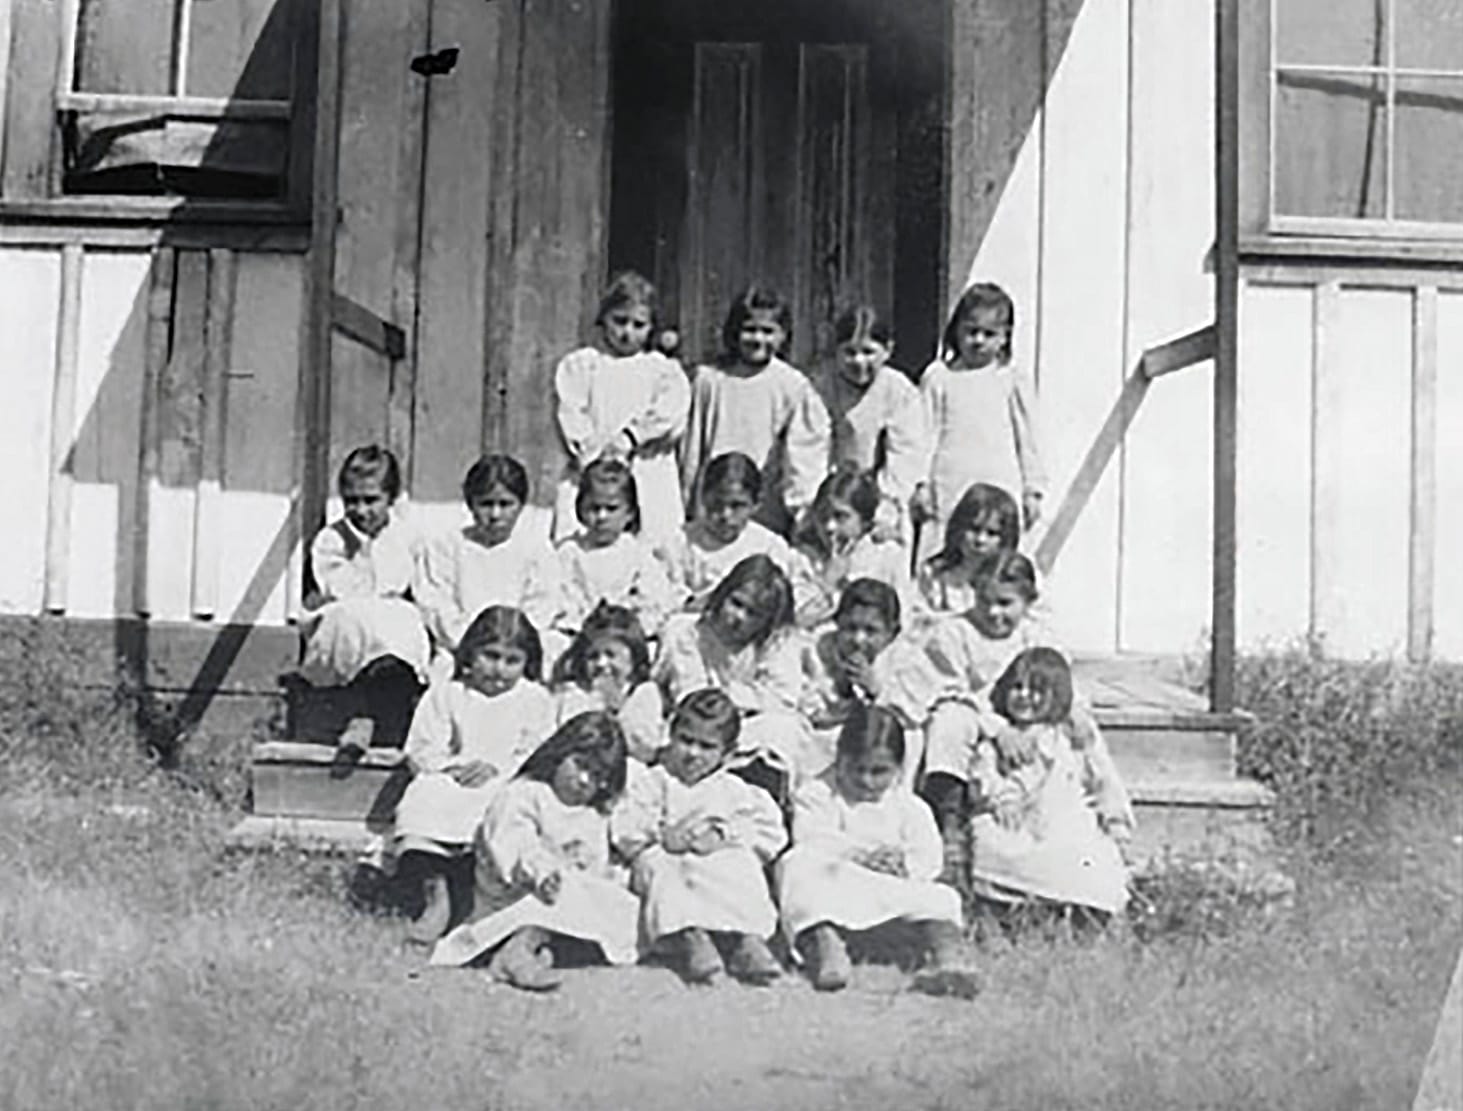 1901-1906_Group of native kindergarten children